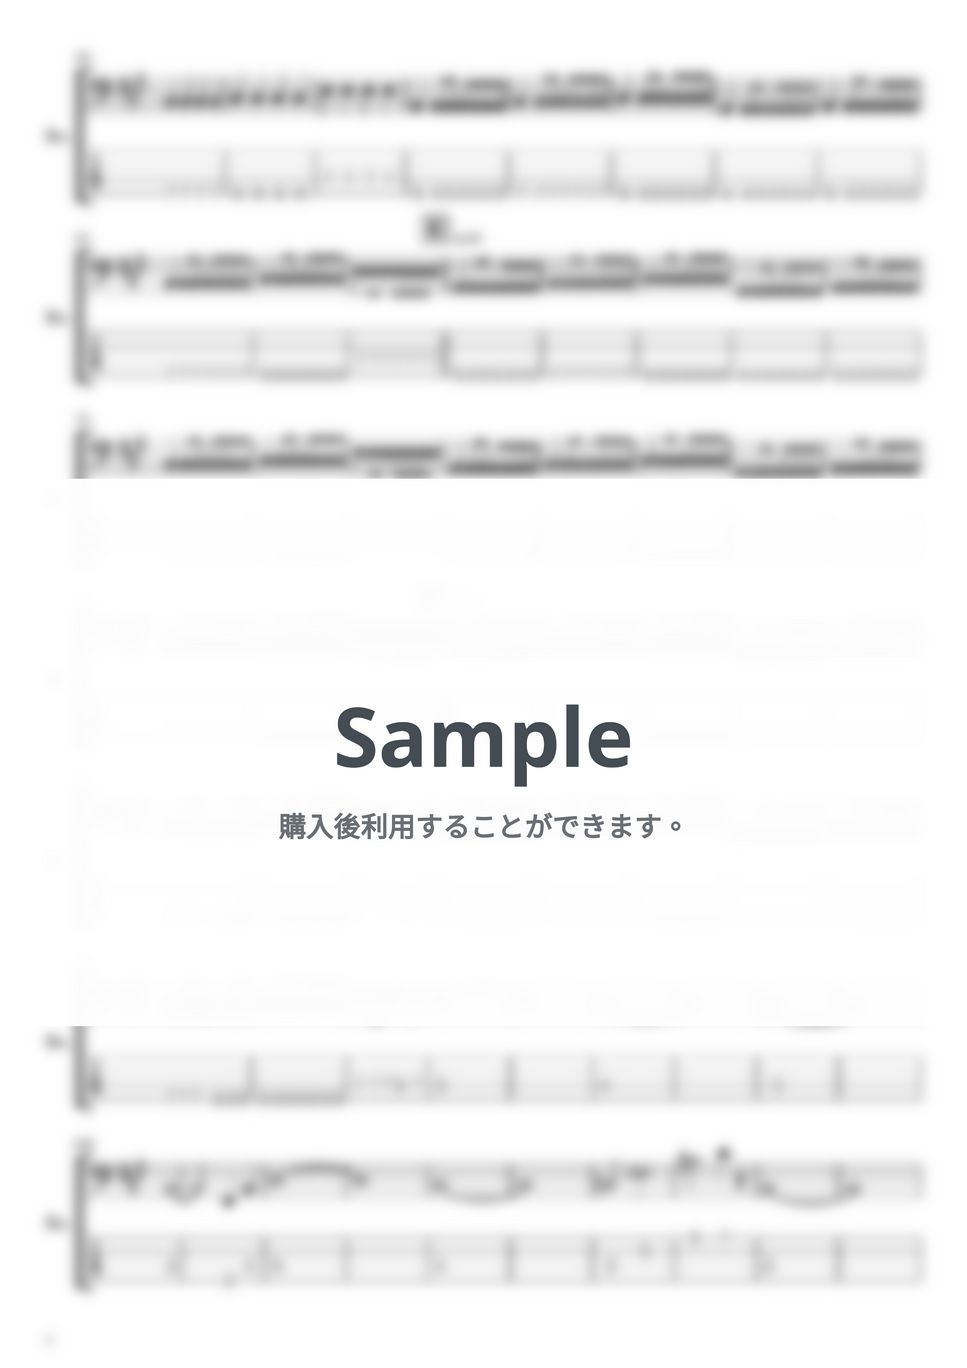 ハルカミライ - ヨーロービル、朝 (ベースTAB譜) by やまさんルーム